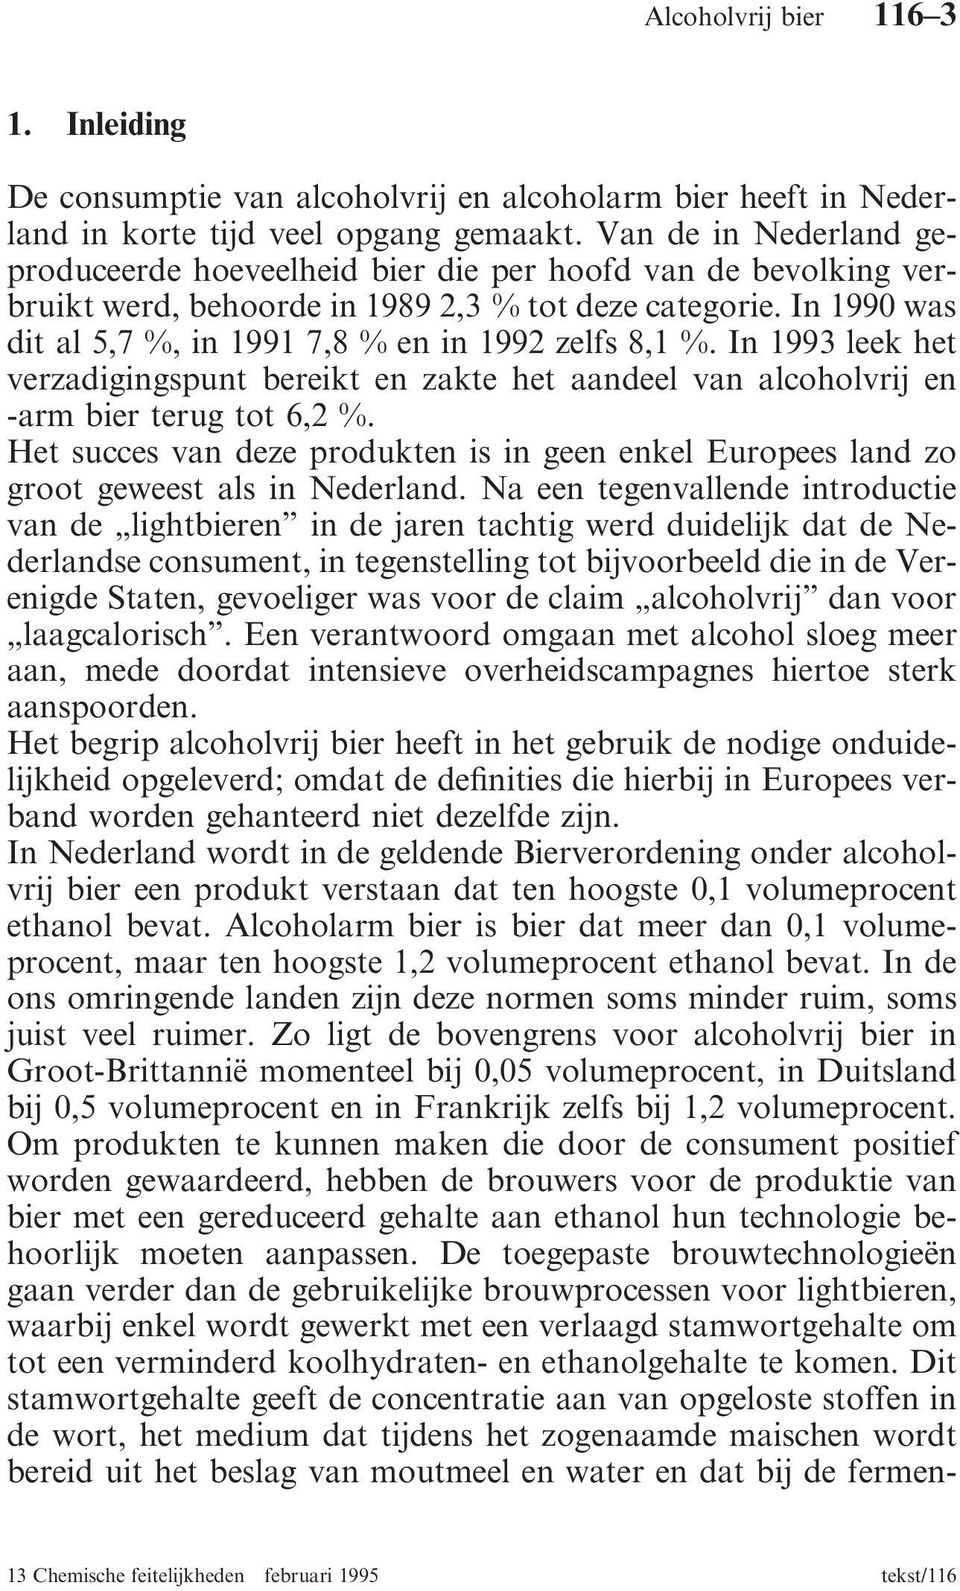 In 1990 was dit al 5,7 %, in 1991 7,8 % en in 1992 zelfs 8,1 %. In 1993 leek het verzadigingspunt bereikt en zakte het aandeel van alcoholvrij en -arm bier terug tot 6,2 %.